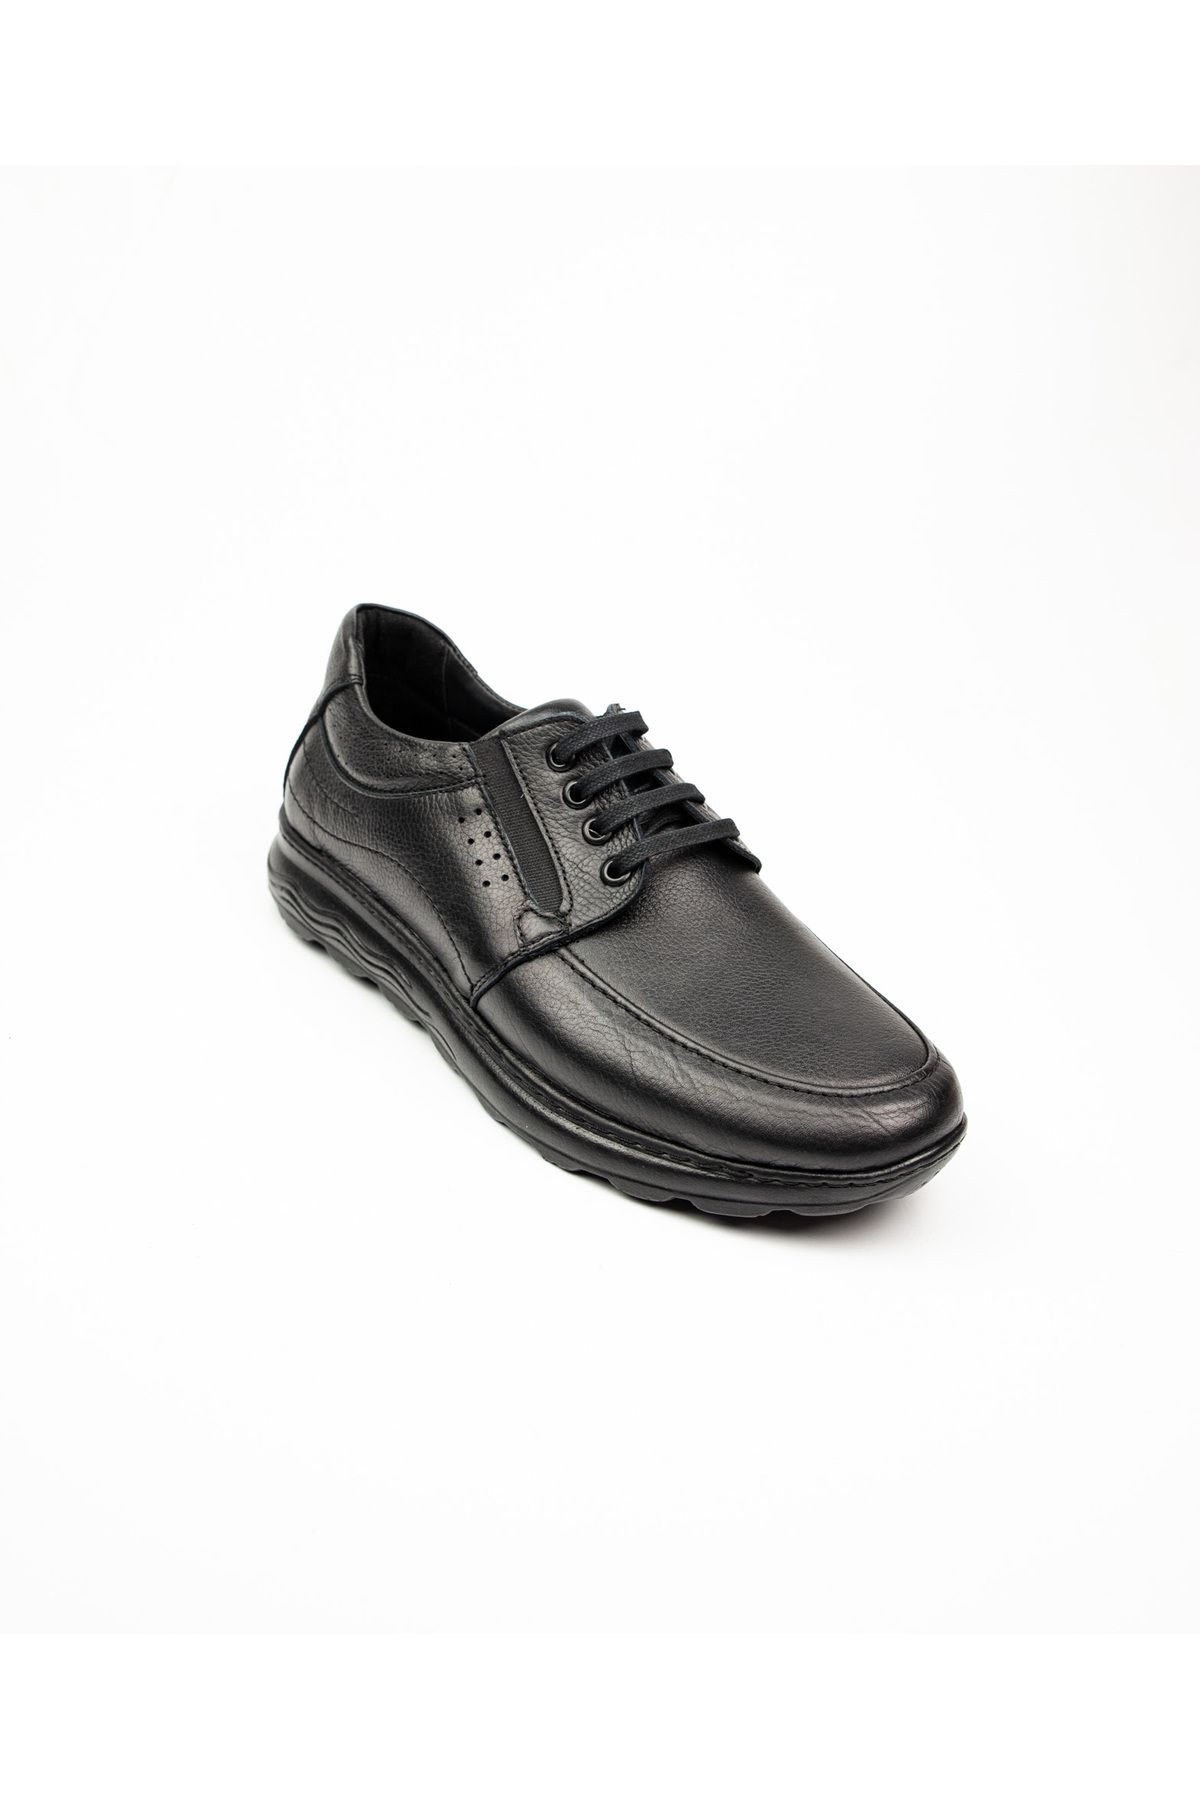 Modesa 228 Bağcıklı Siyah Deri Erkek Günlük Ayakkabı